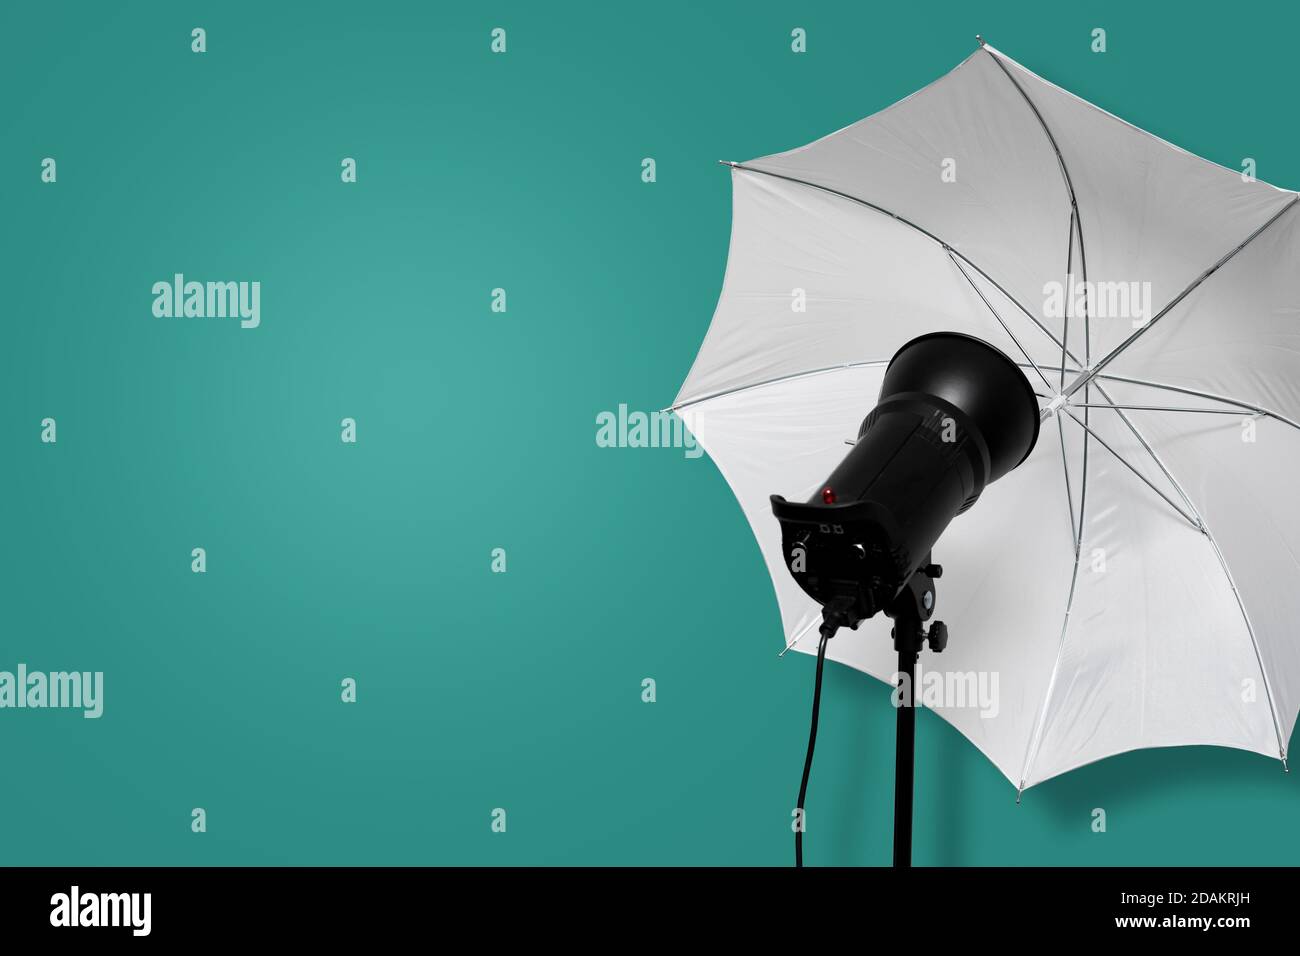 flash stroboscopico di studio fotografico con ombrello bianco su supporto su sfondo ciano. attrezzatura di illuminazione. spazio di copia Foto Stock